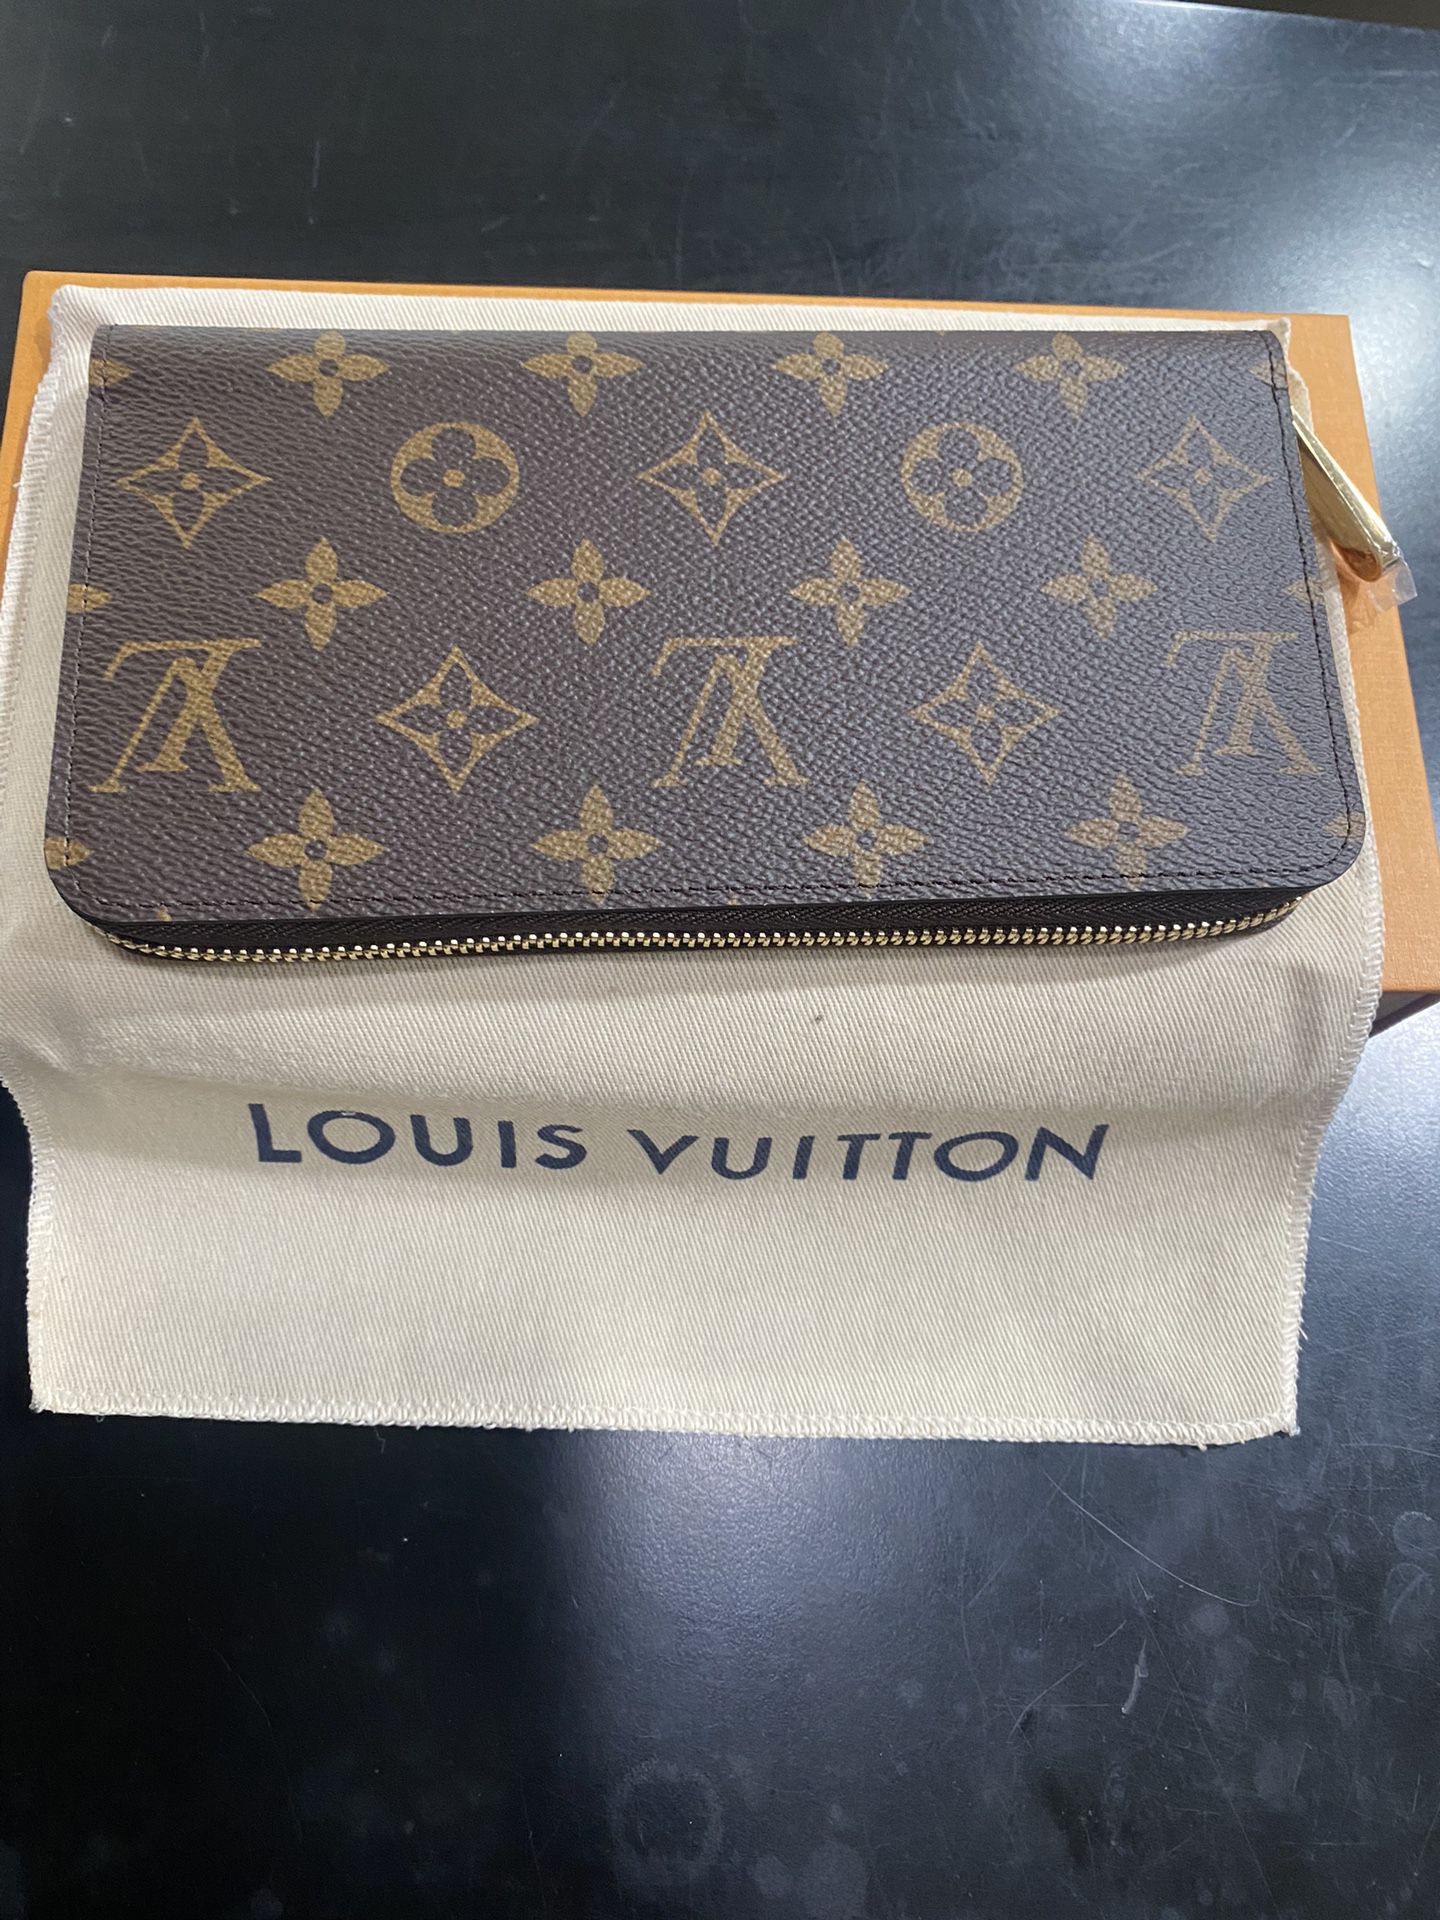 Louis Vuitton Pince Wallet de segunda mano por 200 EUR en Marbella en  WALLAPOP